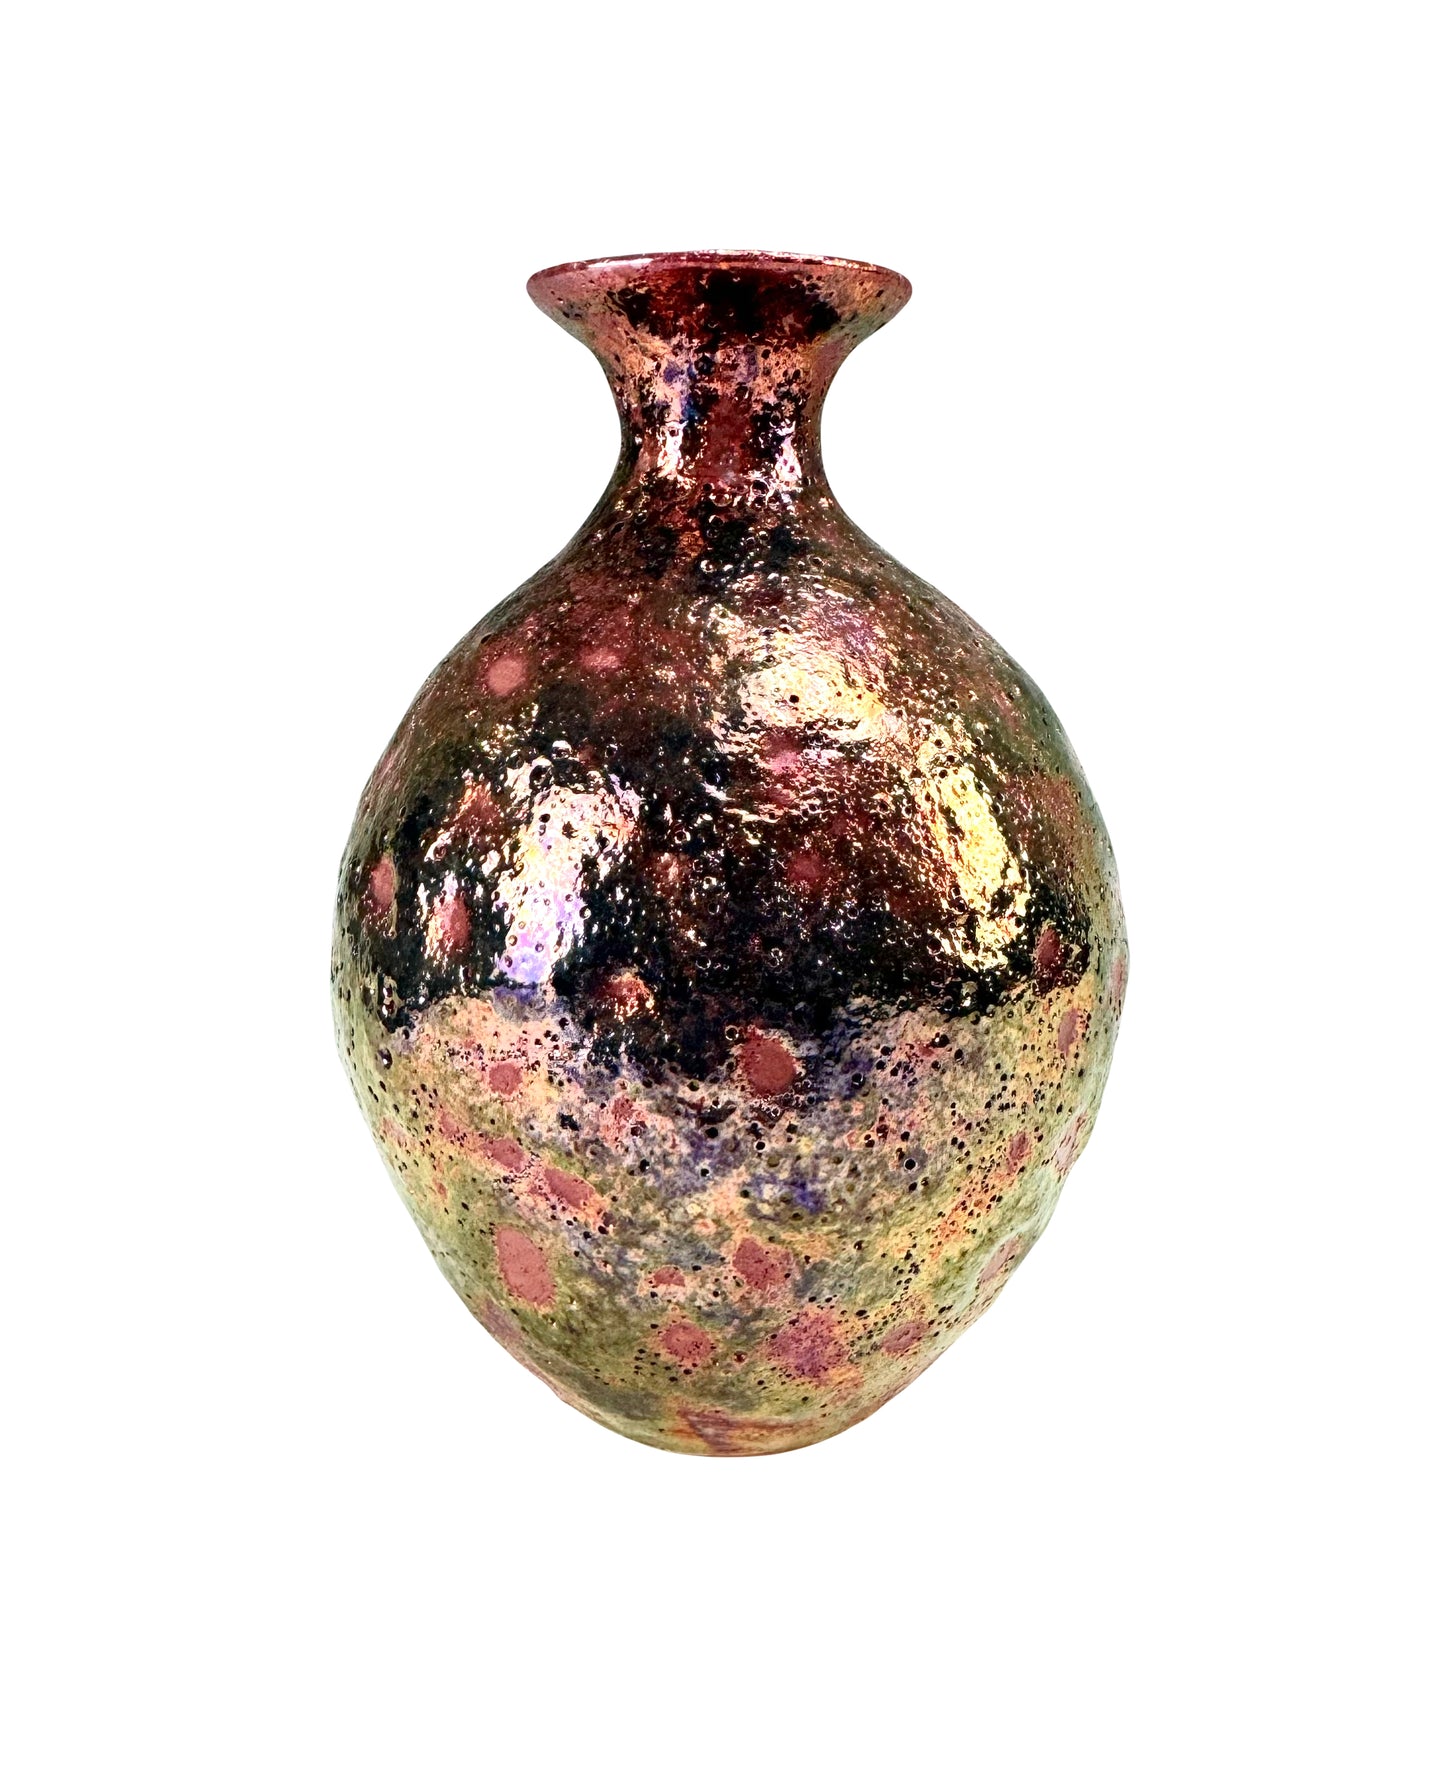 Copper and Gold Speckled Luster Vase